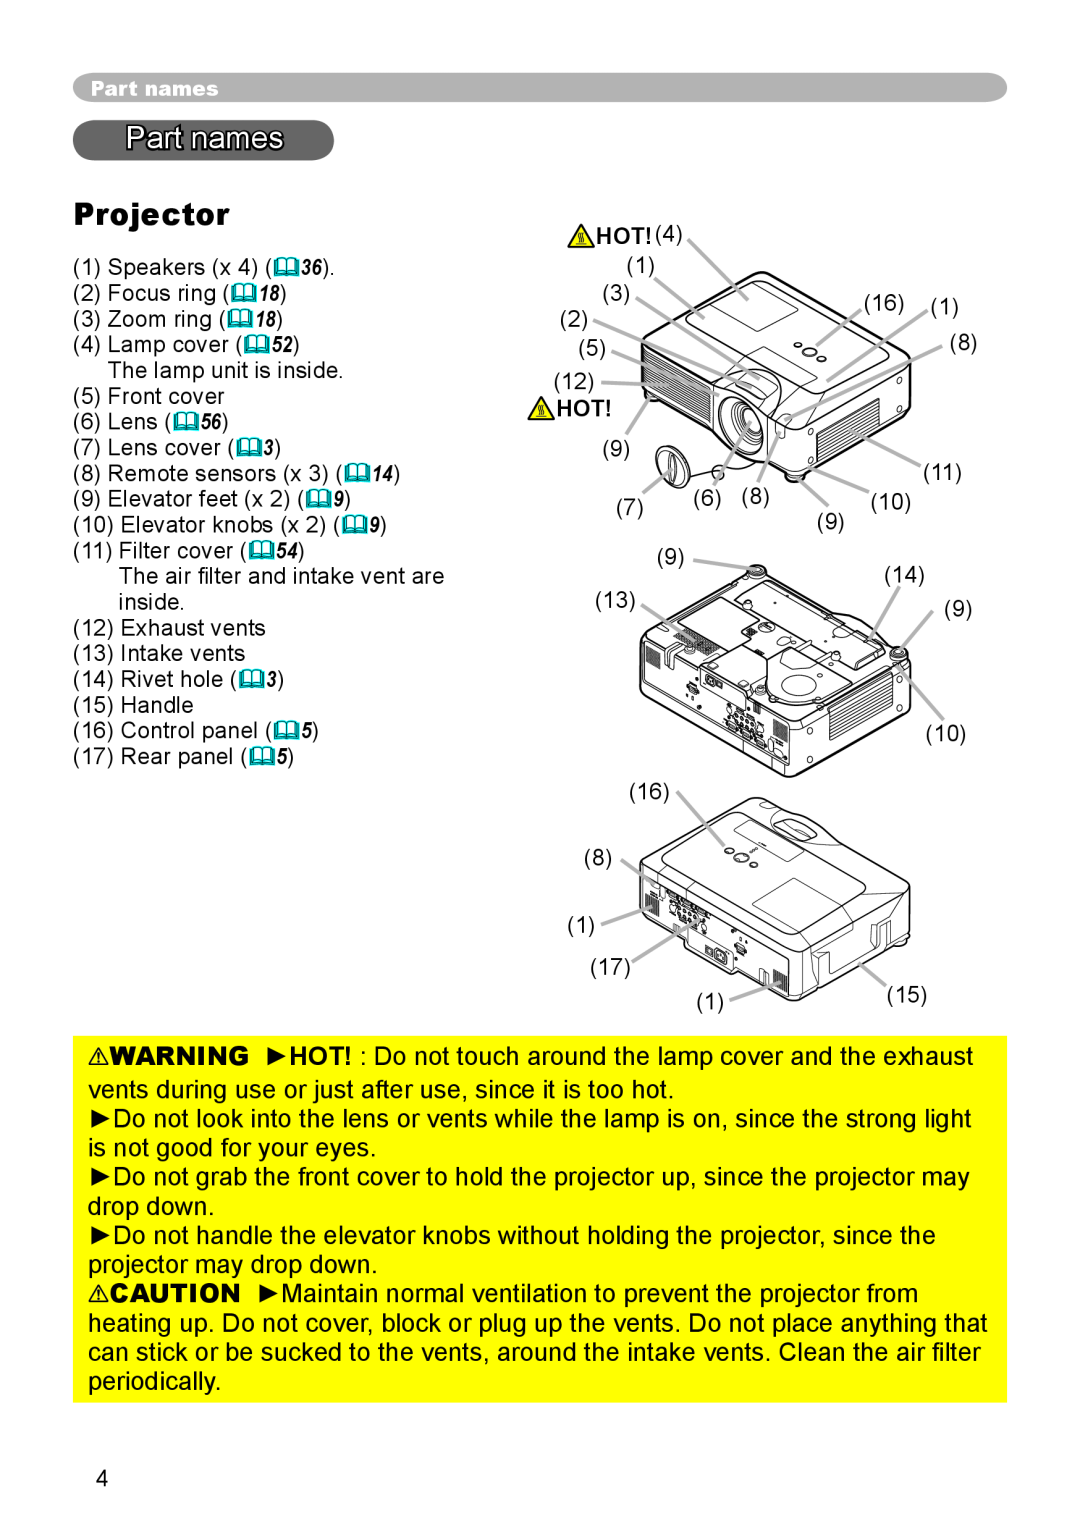 Hitachi CP-X600 user manual Part names, Projector 